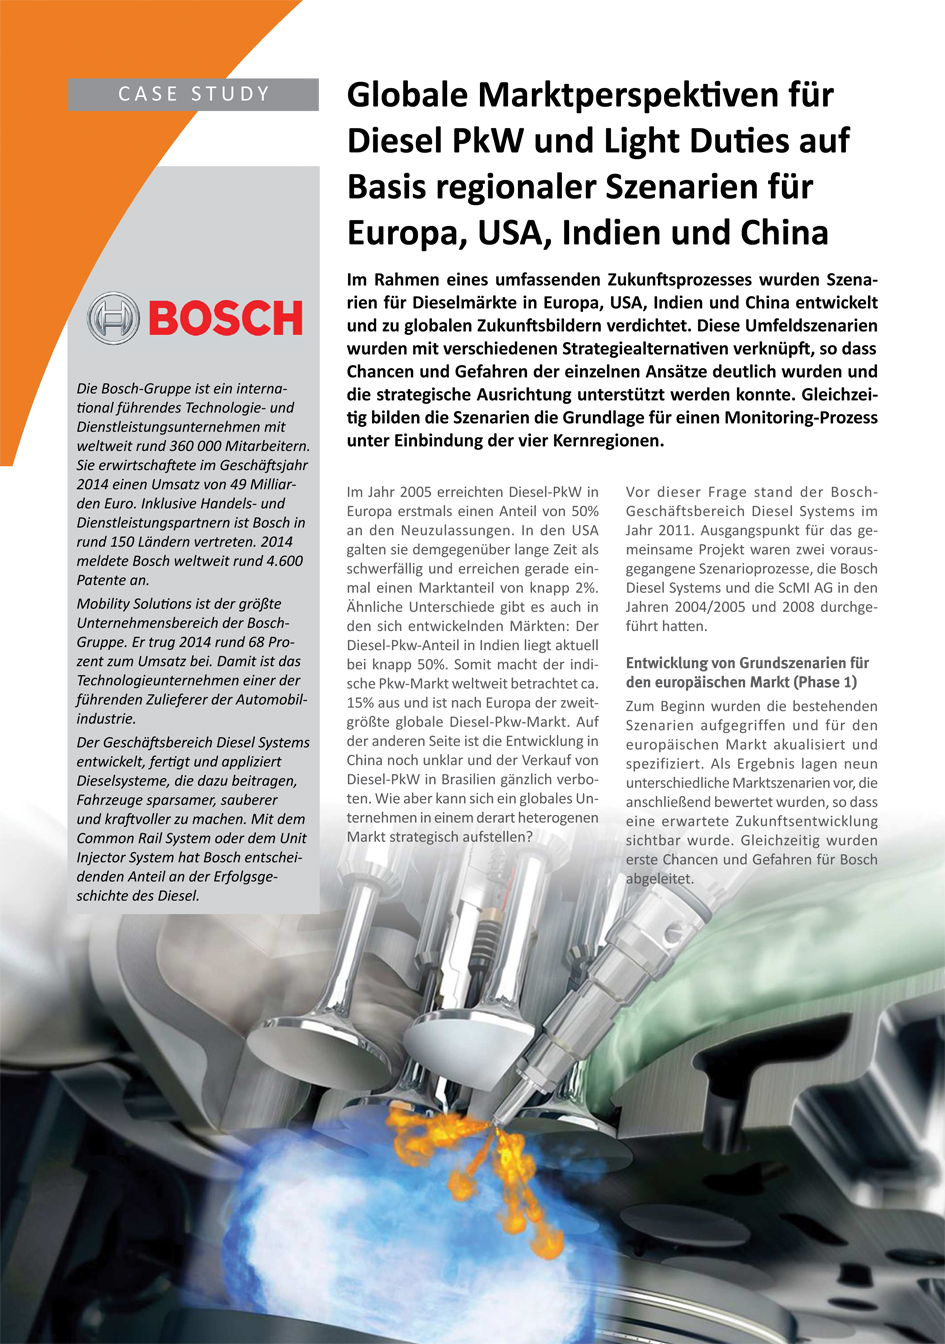 Case Study Bosch Diesel